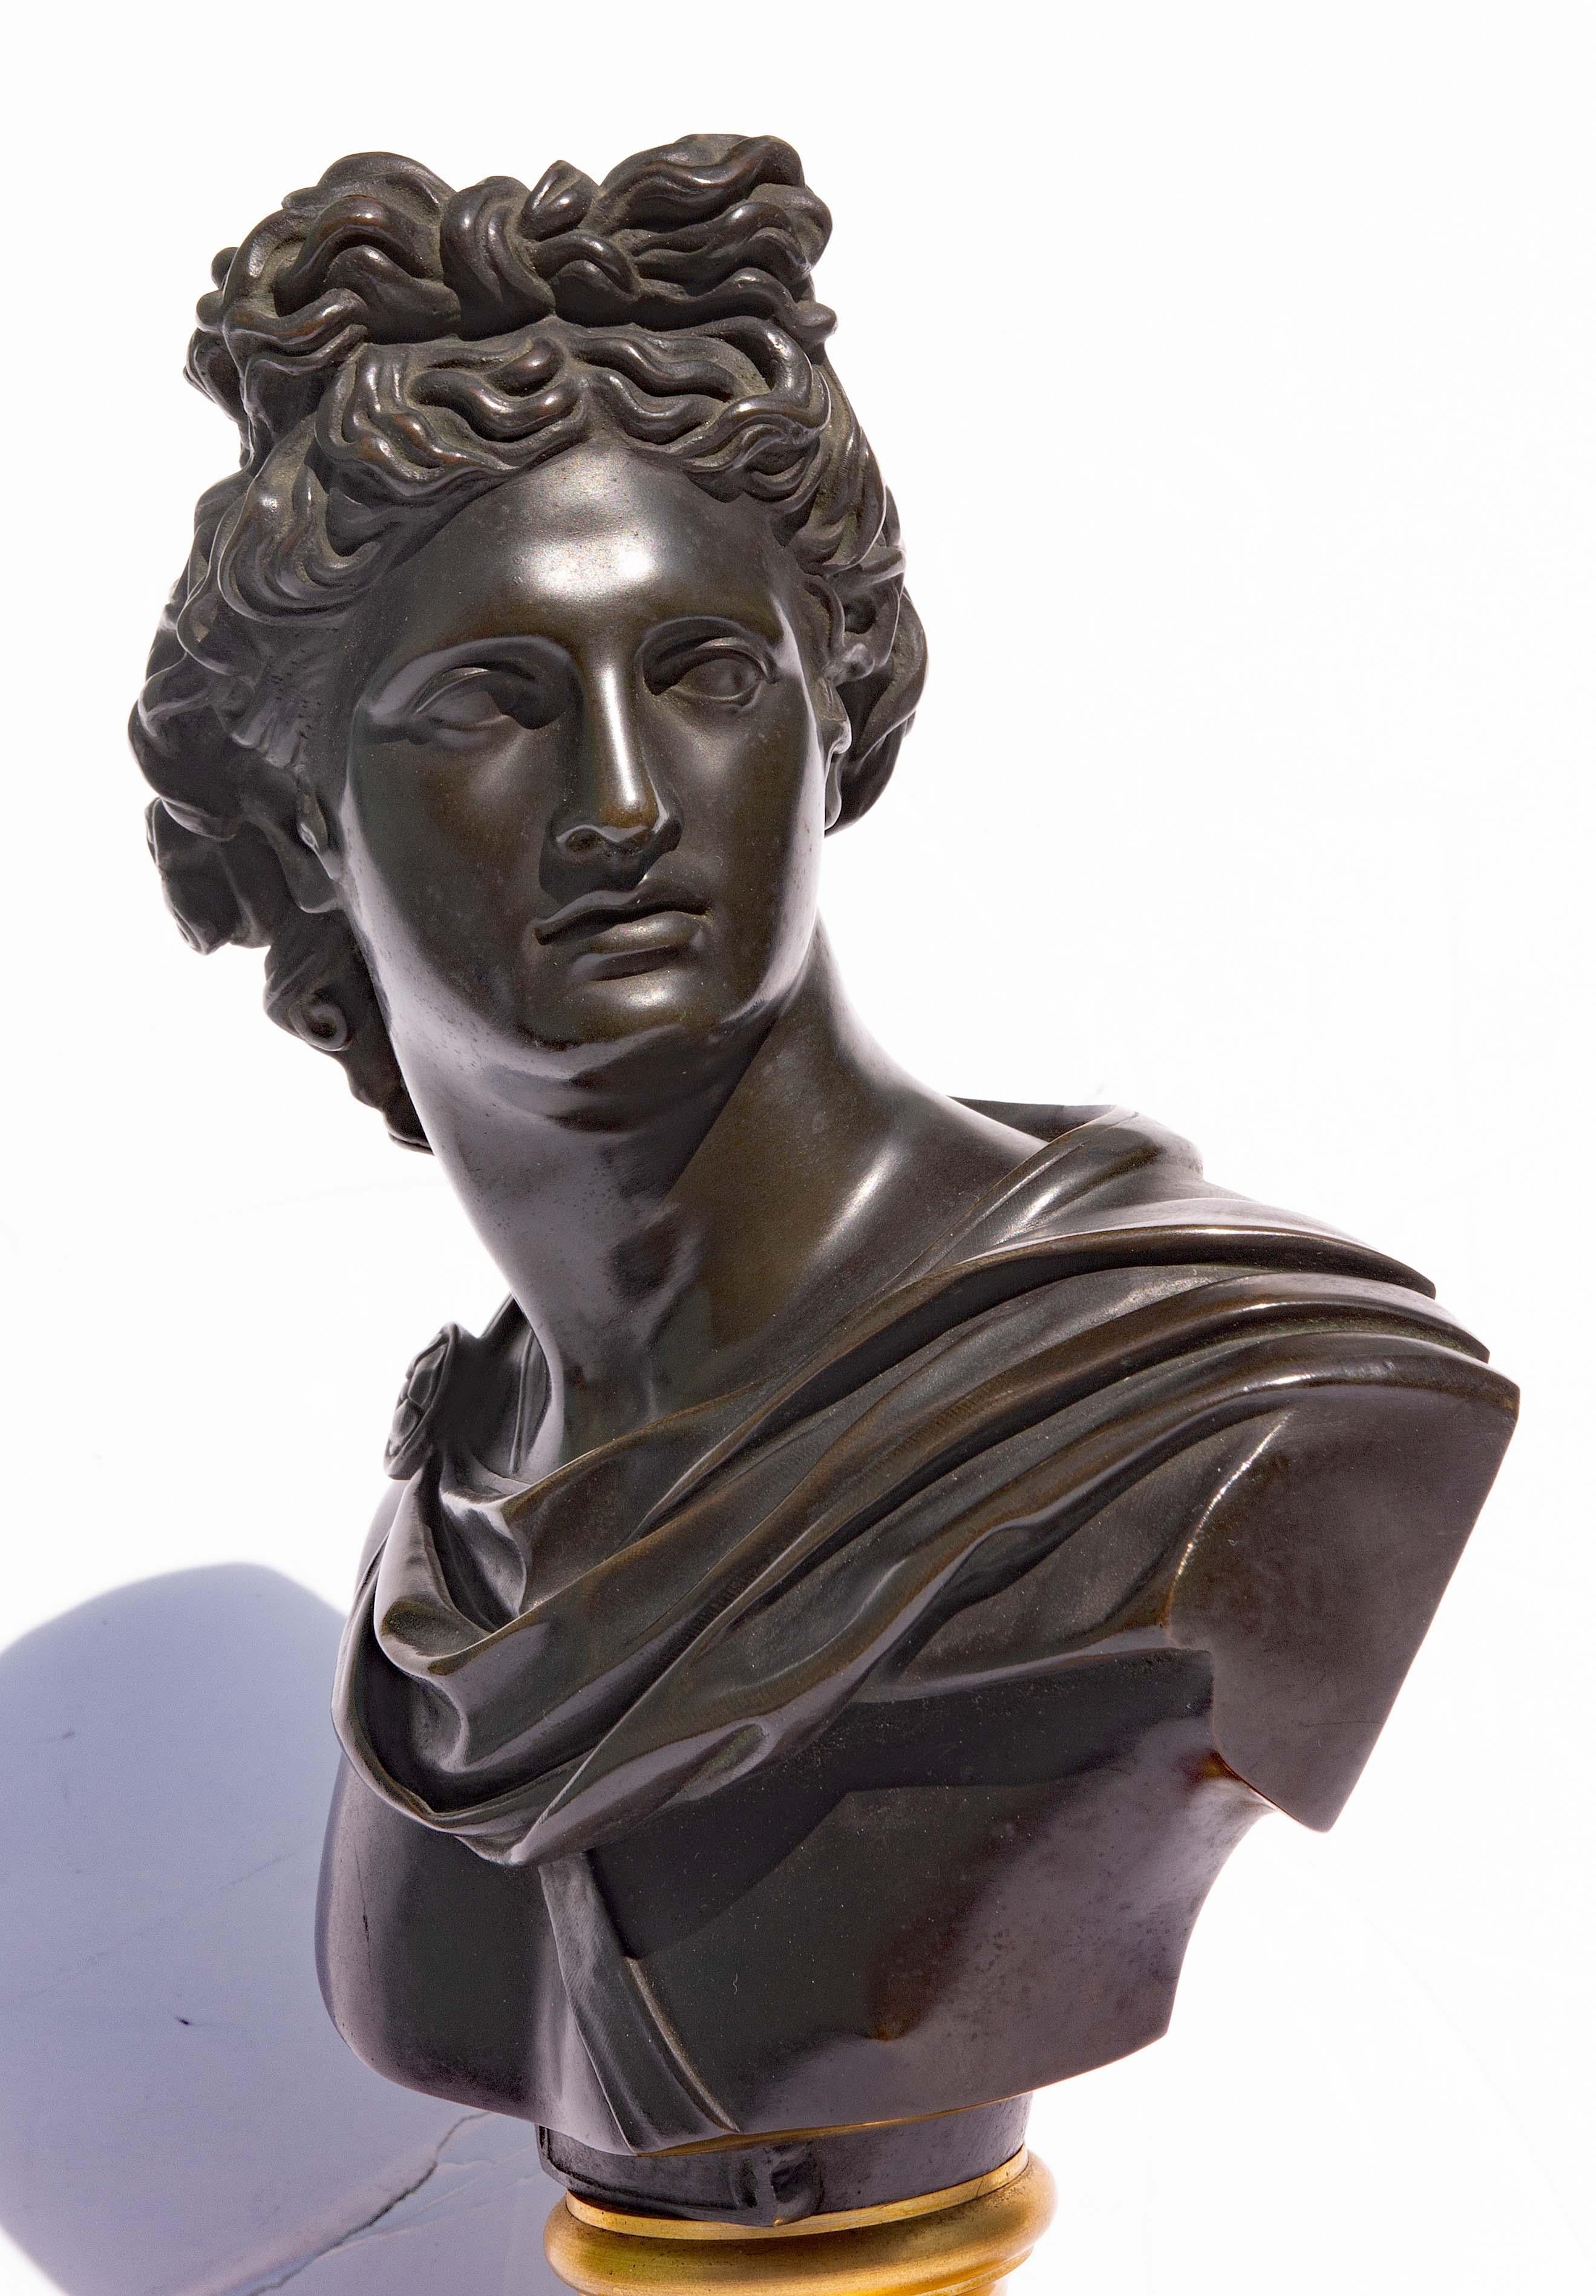 Magnífico busto de bronce y bronce dorado del siglo XIX del dios Apolo Belvedere. Circa 1850. Este maravilloso busto de gran viaje es una maravilla de refinada belleza y elegancia, elaborado con bronce ricamente patinado sobre un zócalo de bronce